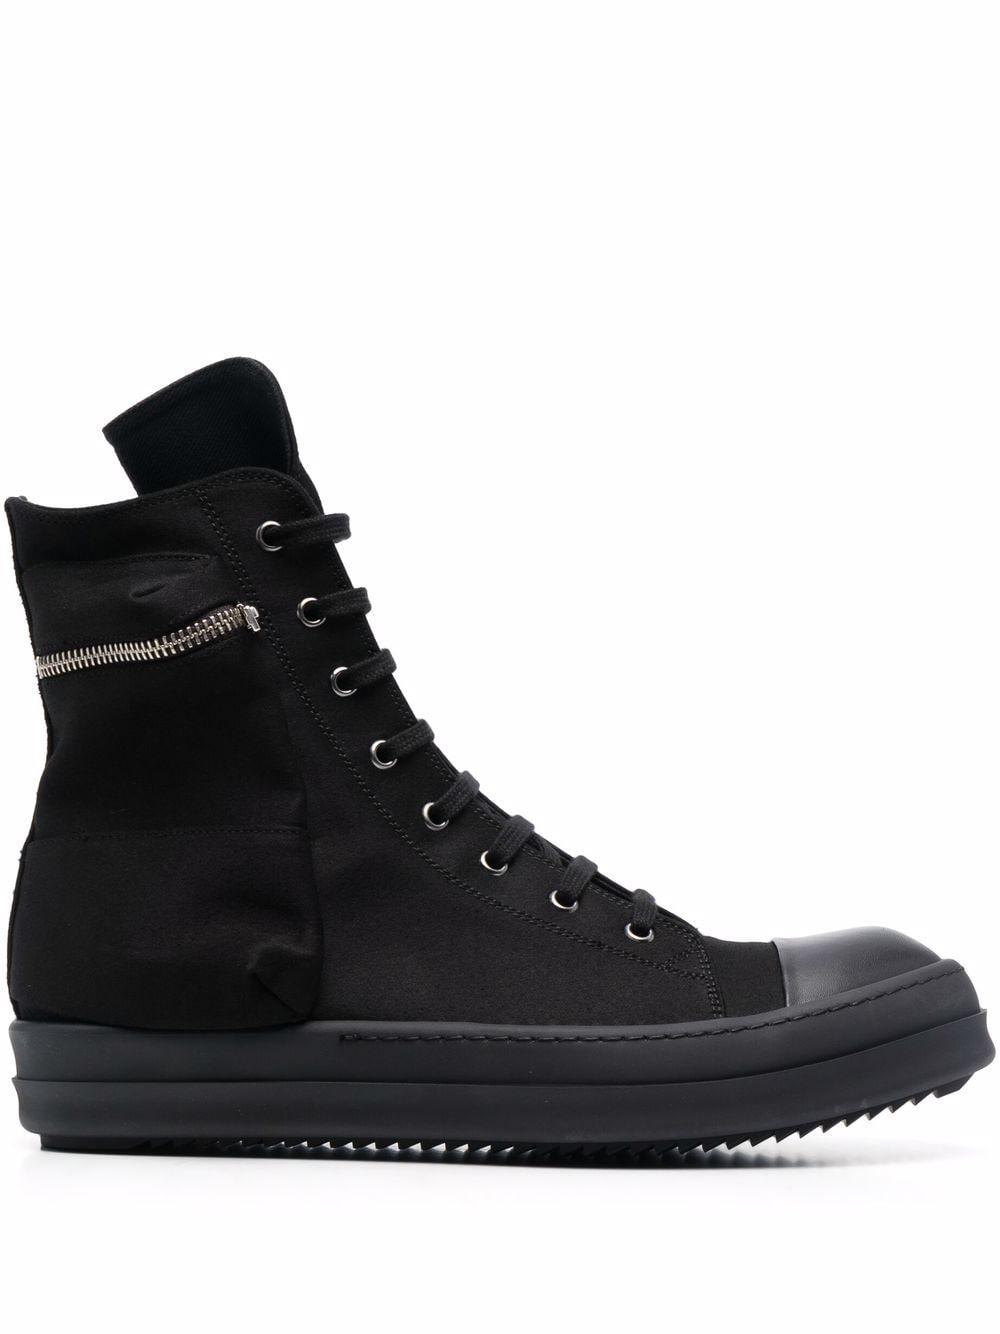 RICK OWENS DRKSHDW High Top Sneakers Black